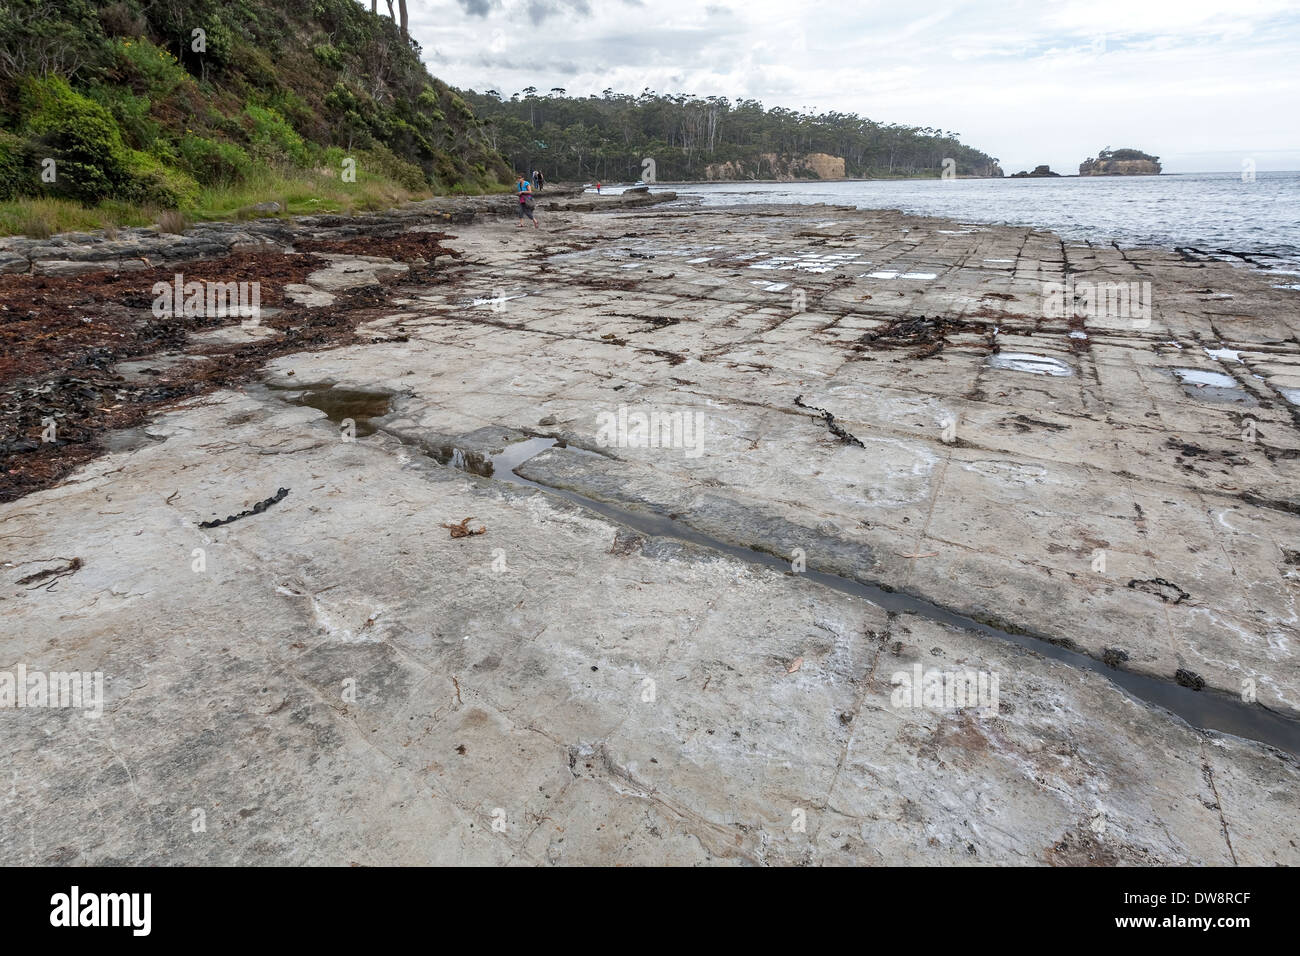 Formation de moules, chaussée à facettes - plate-forme marine en pierre à soie fissurée près d'Eaglehawk Neck, Port Arthur, Tasmanie, Australie Banque D'Images